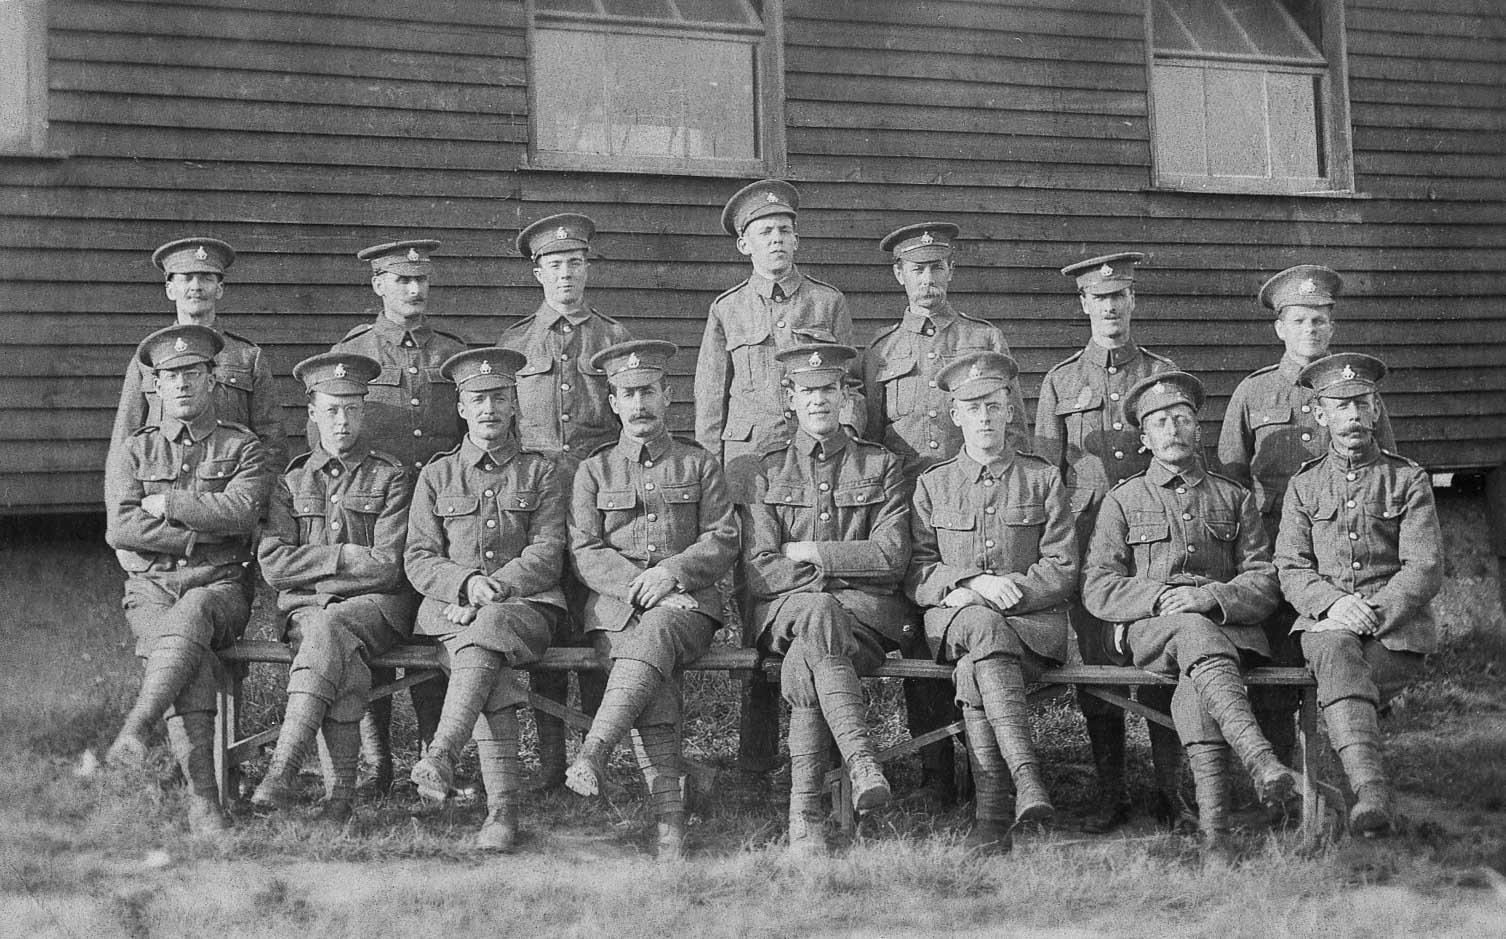 First World War Soldiers - Photo after restoration